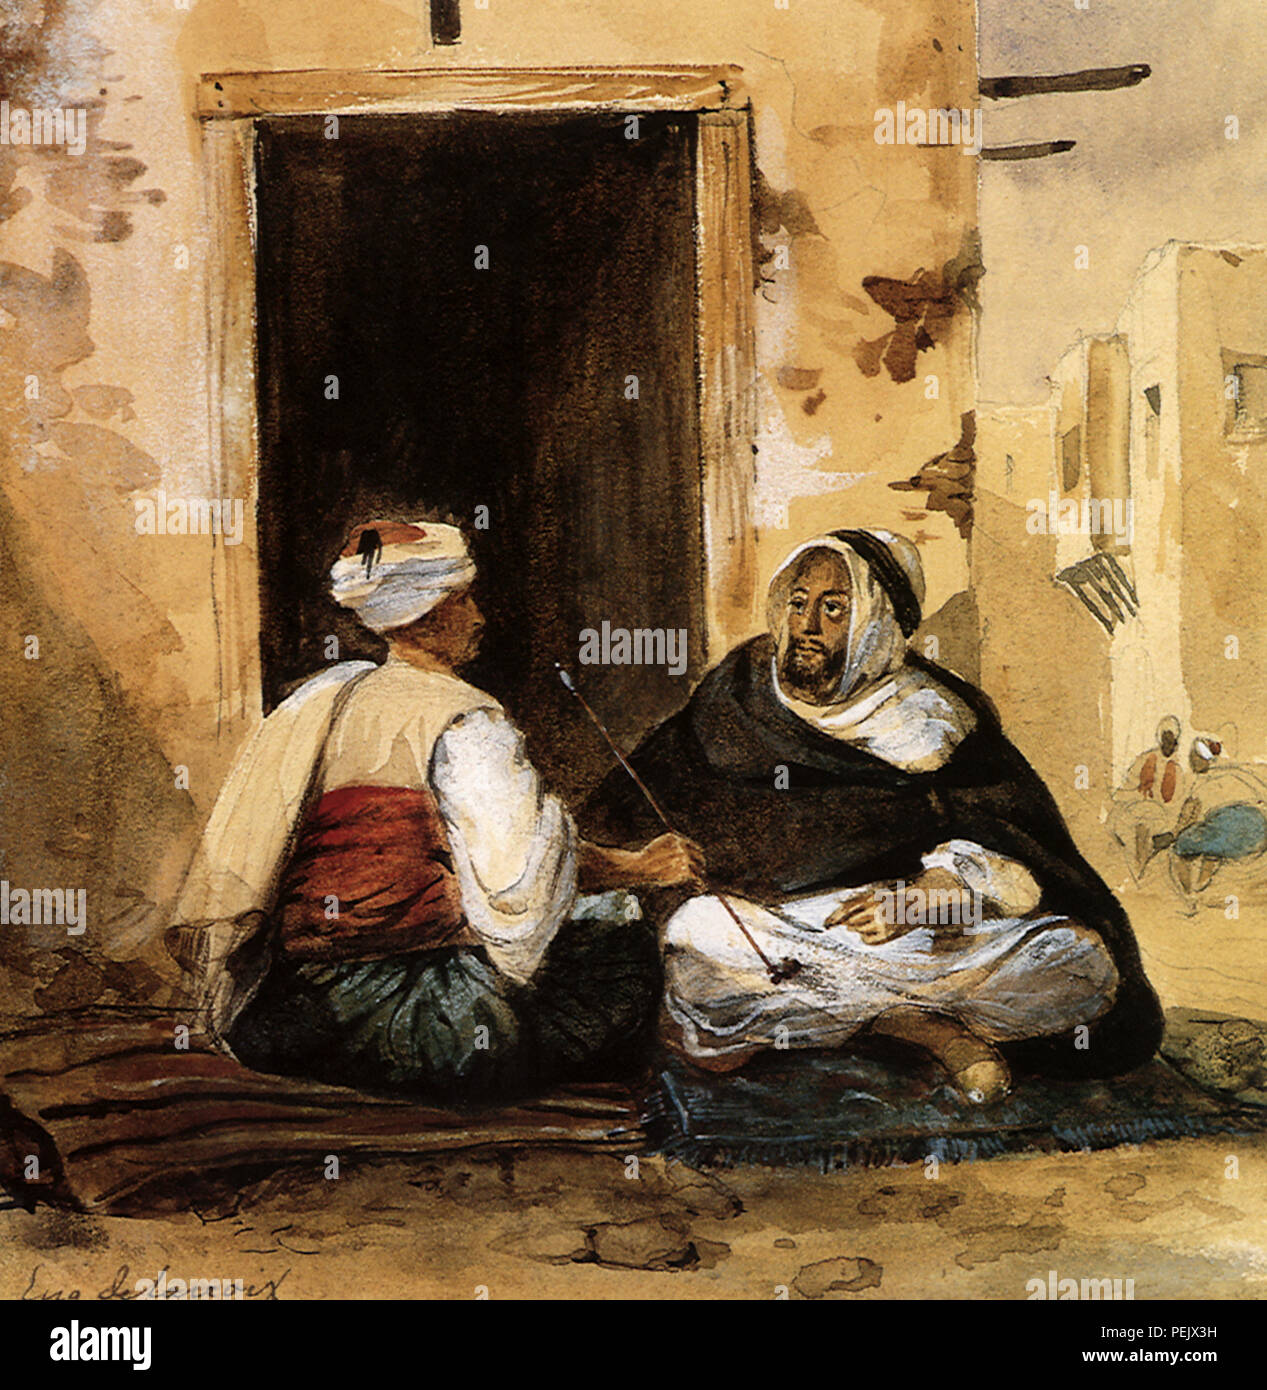 Arabische malerei -Fotos und -Bildmaterial in hoher Auflösung – Alamy